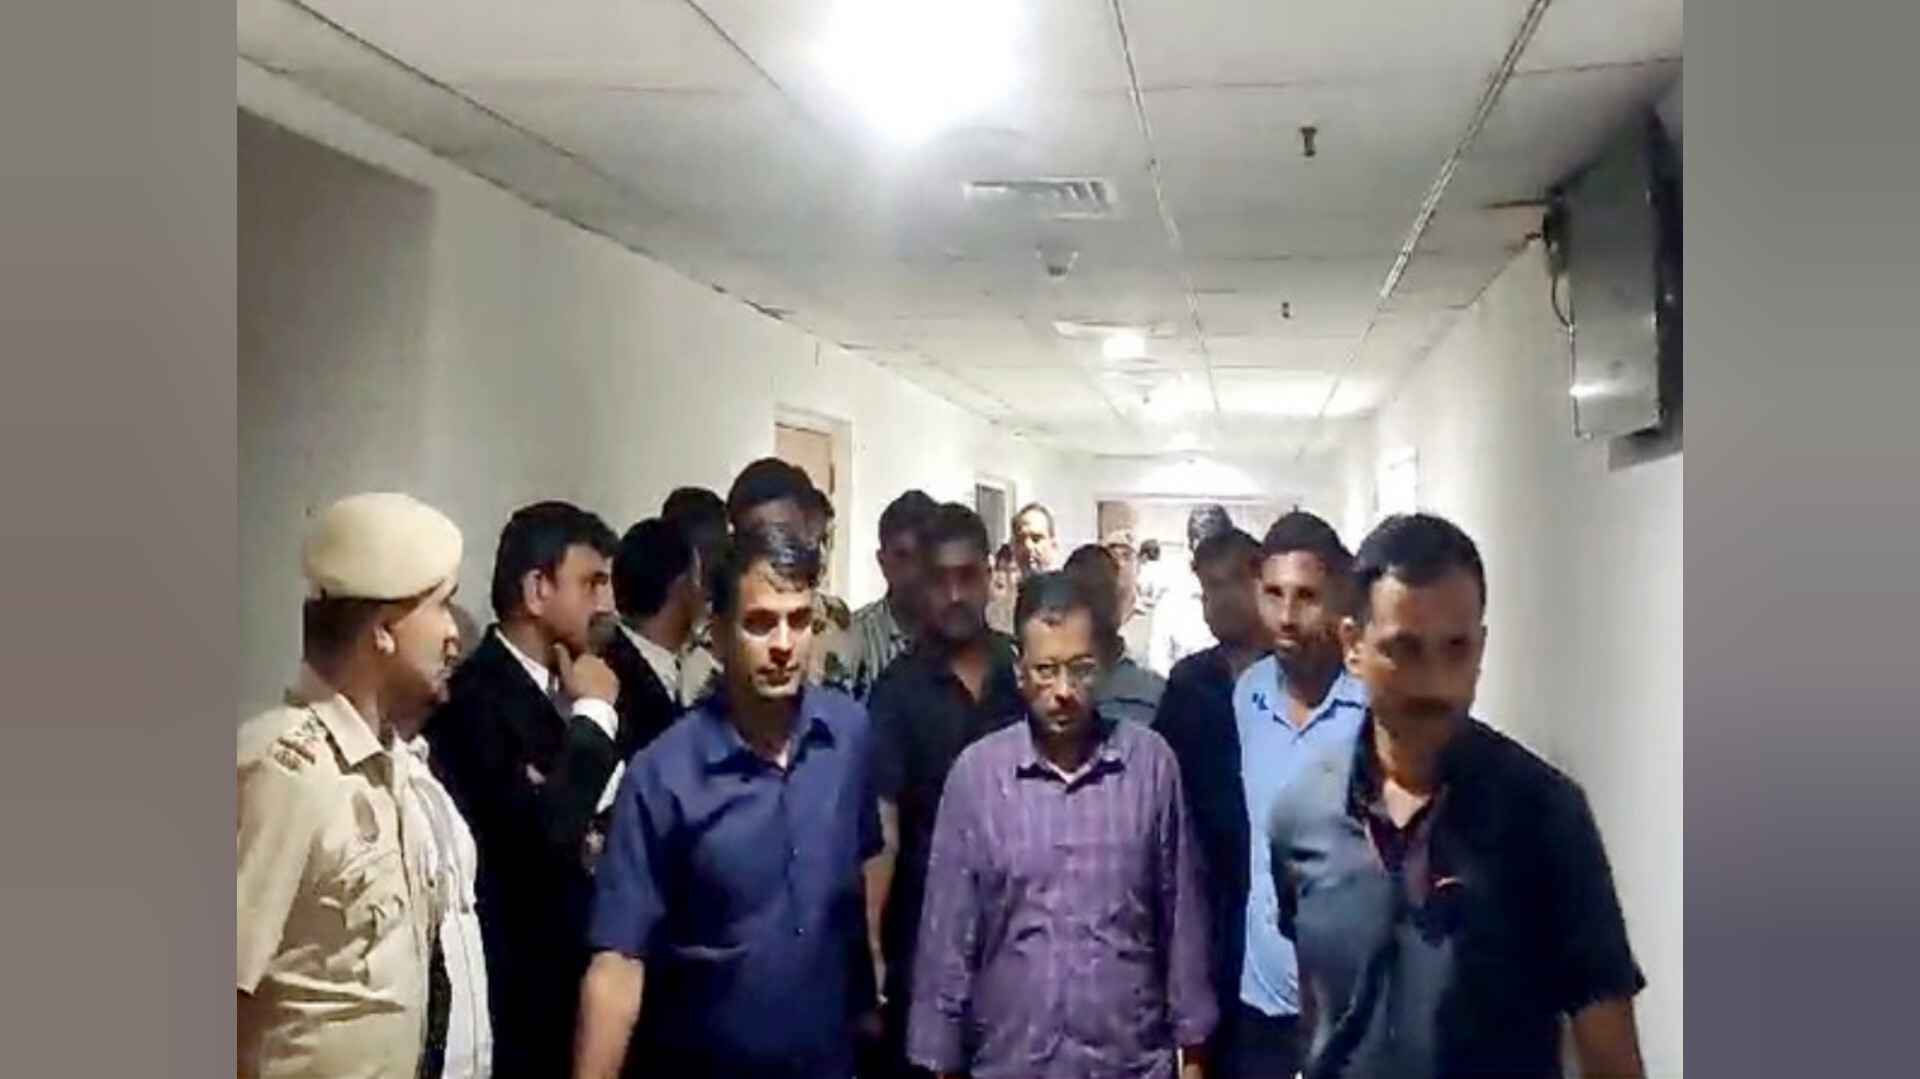 केजरीवाल का वजन 4.5 किलो कम हो गया है, भाजपा जेल में रखकर उनके स्वास्थ्य को खतरे में डाल रही है: आतिशी